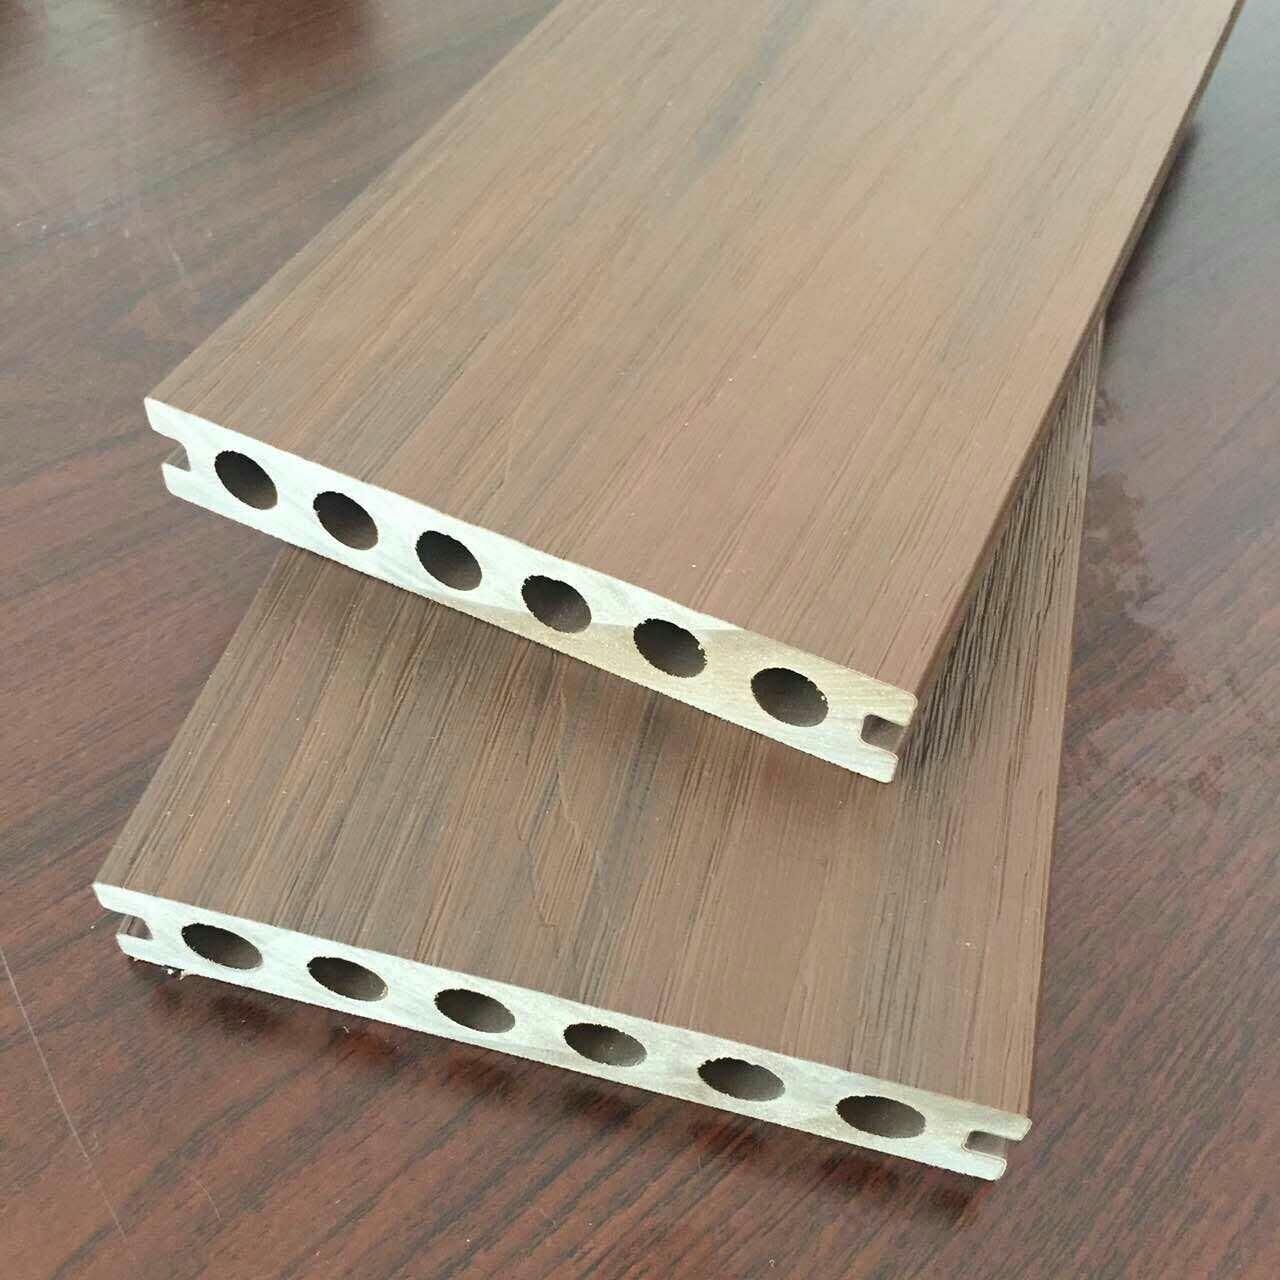 天津塑木地板木塑栈道生产厂家